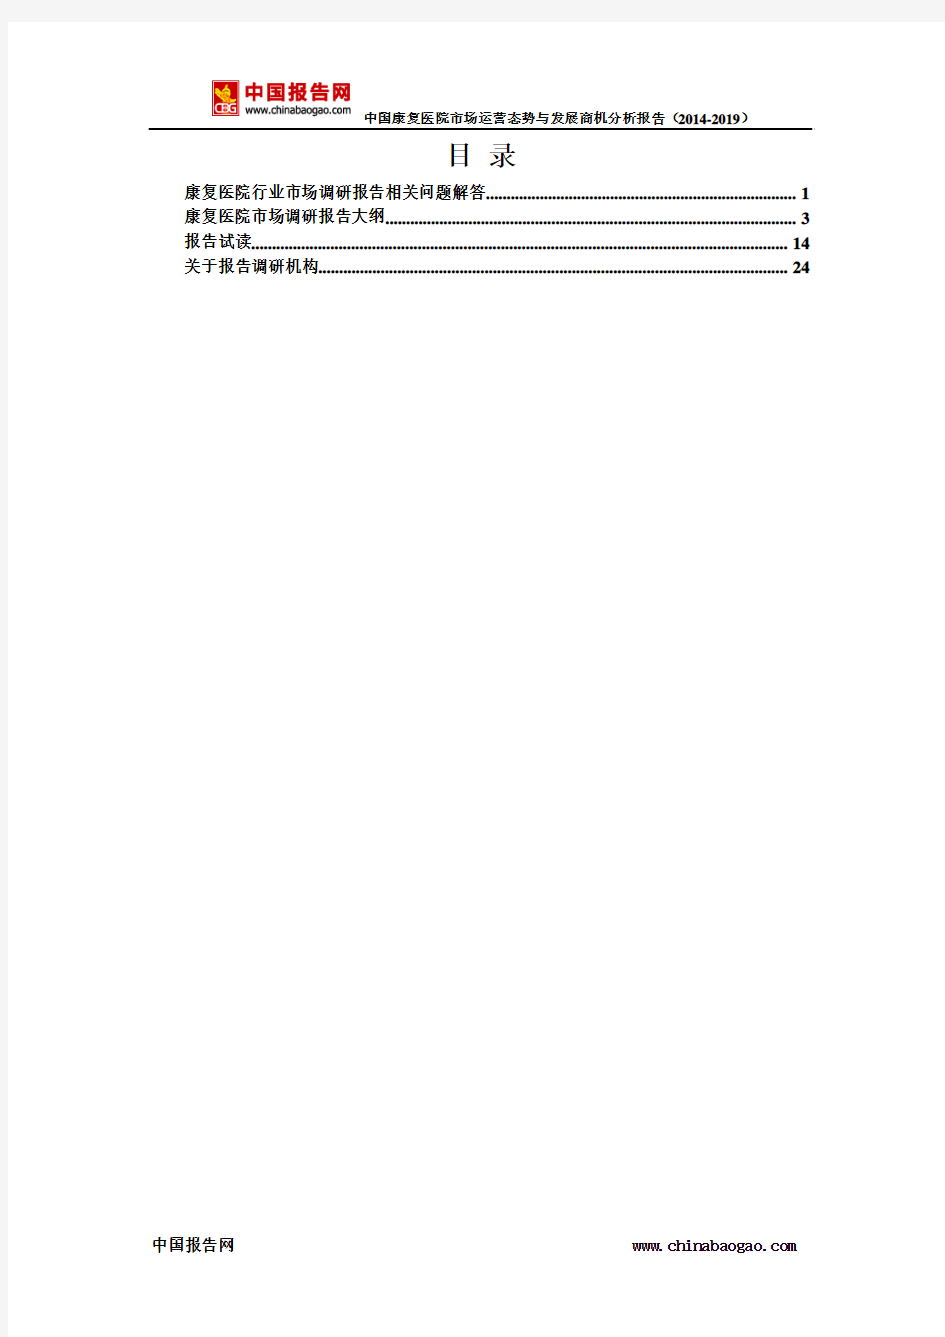 中国康复医院市场运营态势与发展商机分析报告(2014-2019)